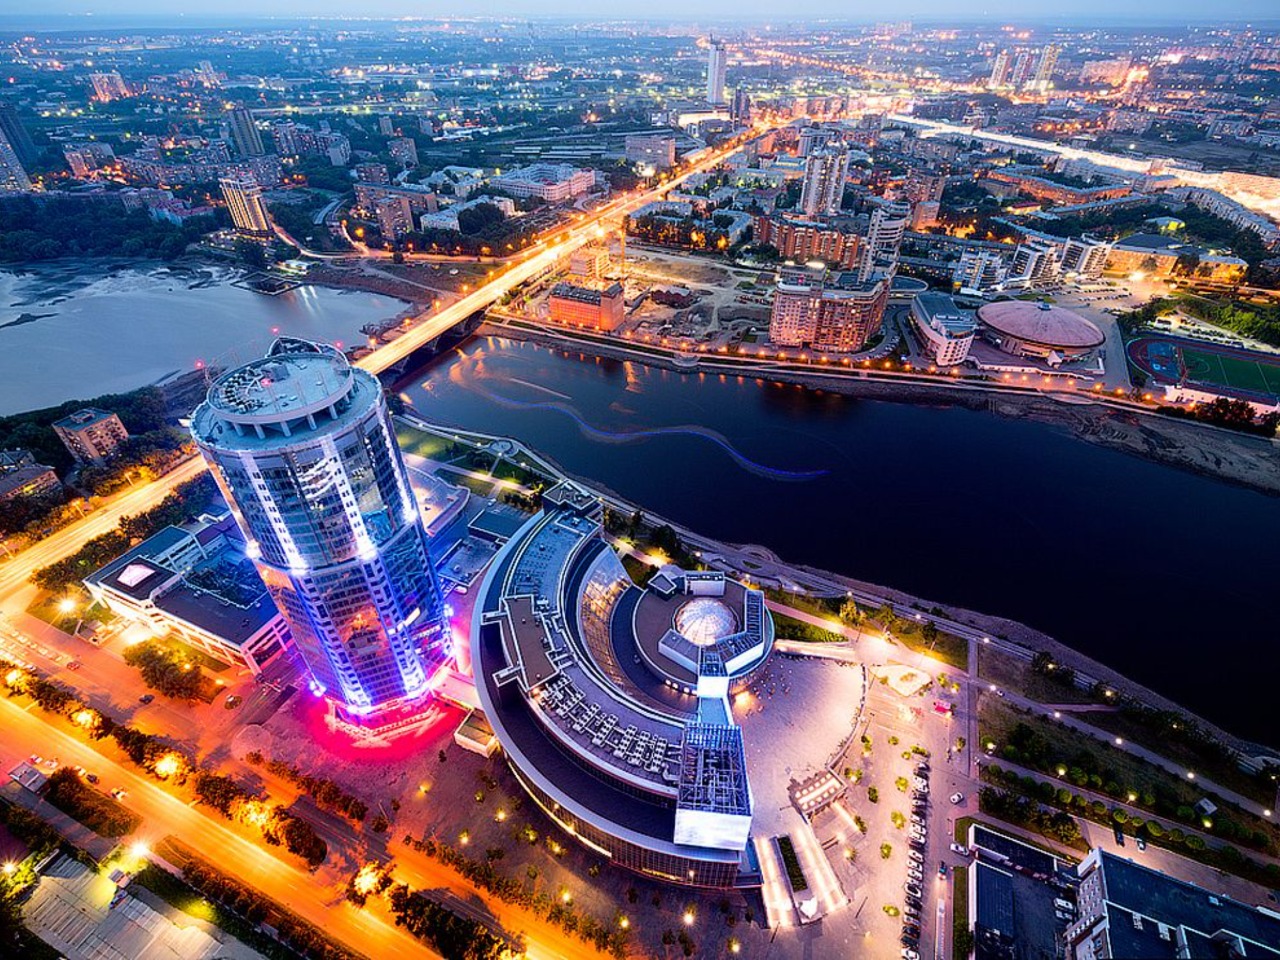  Екатеринбург: экспресс-знакомство с городом | Цена 800₽, отзывы, описание экскурсии